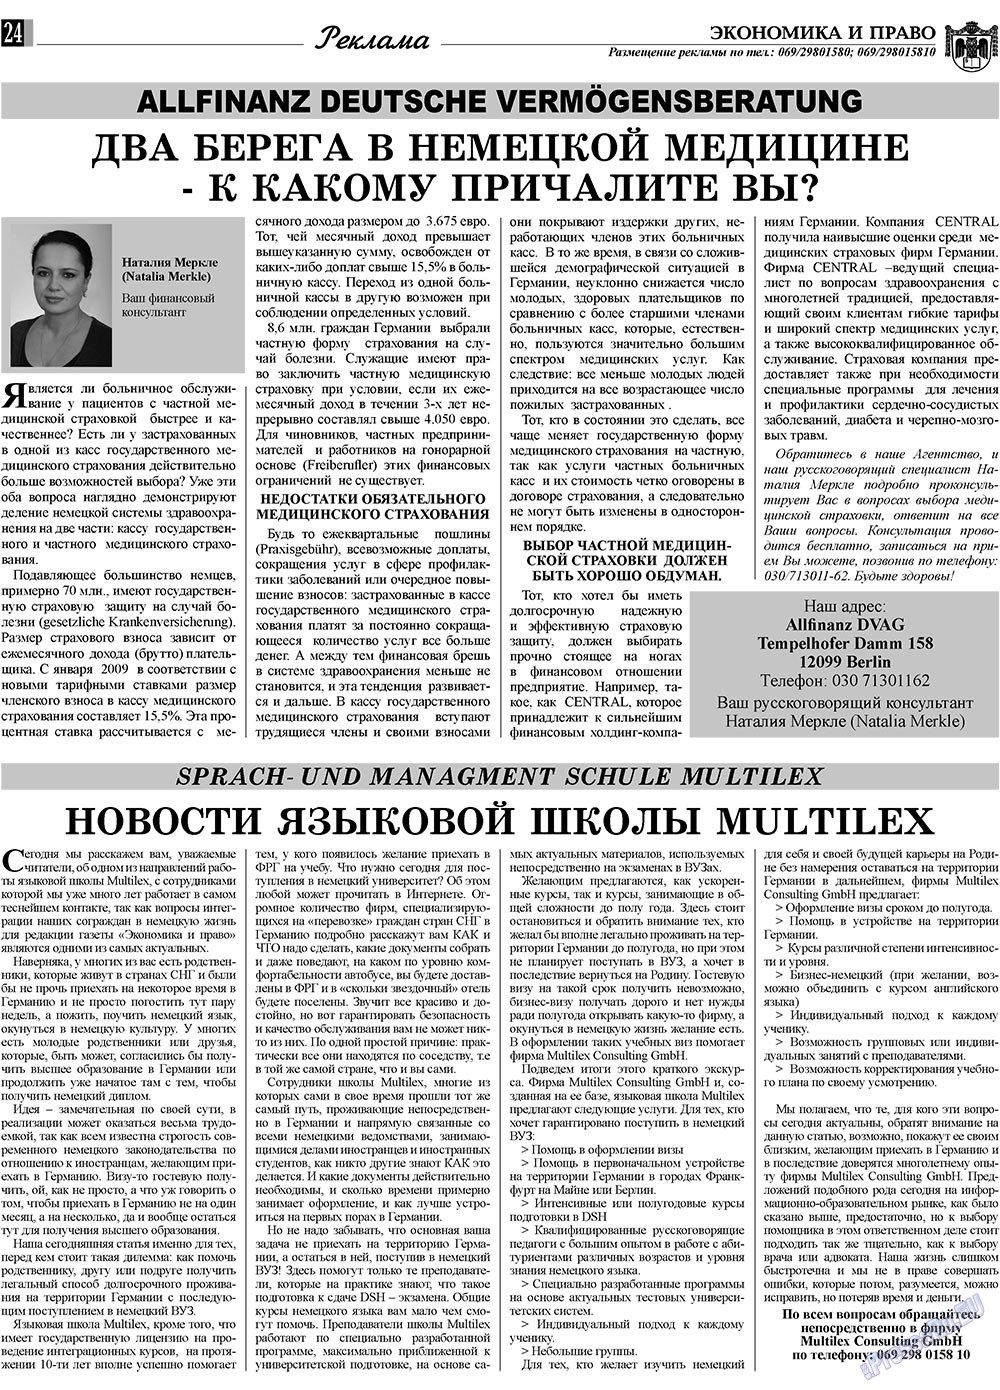 Экономика и право, газета. 2009 №6 стр.24